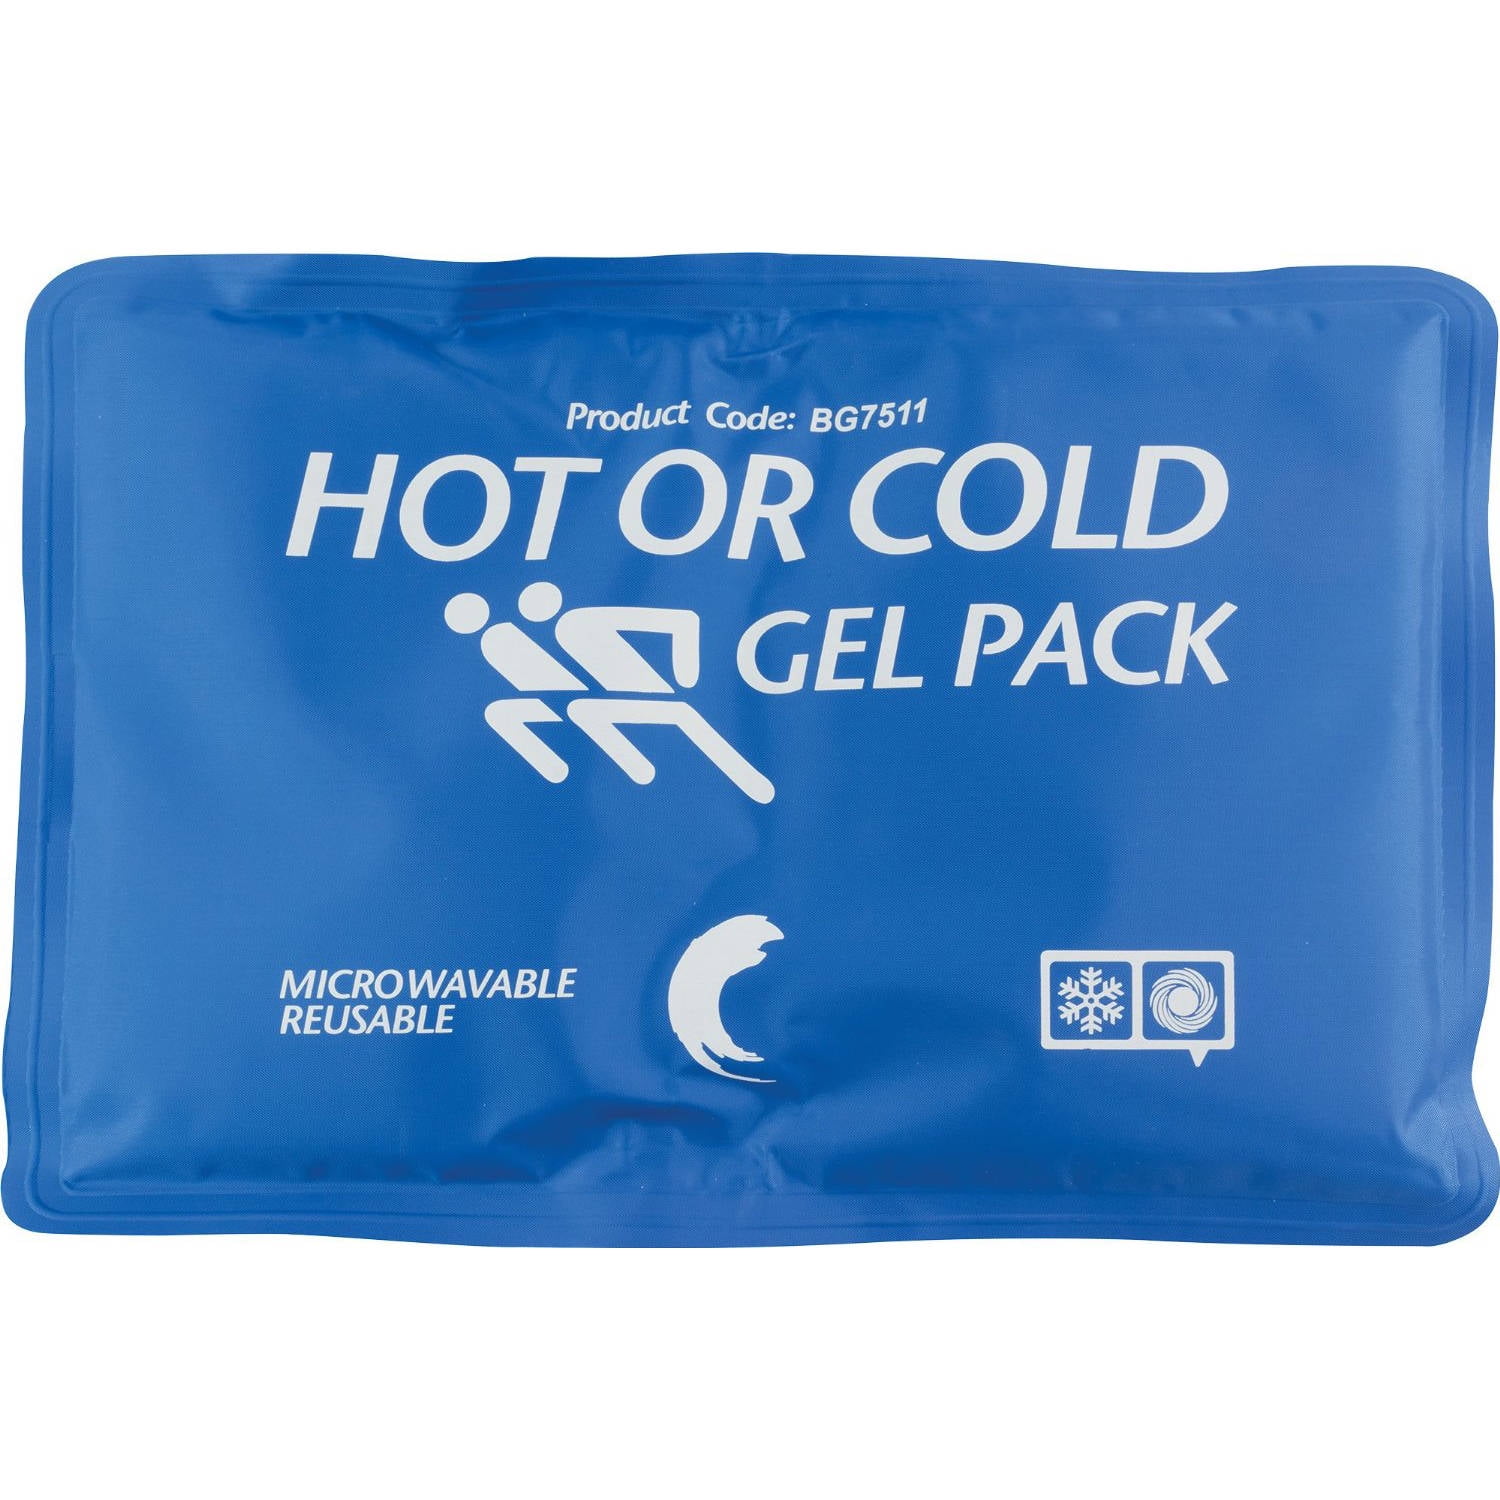 Gel Pack. Cold Pack. Hot or Cold Gel Pack. Гель пак 26 производители. Cold back